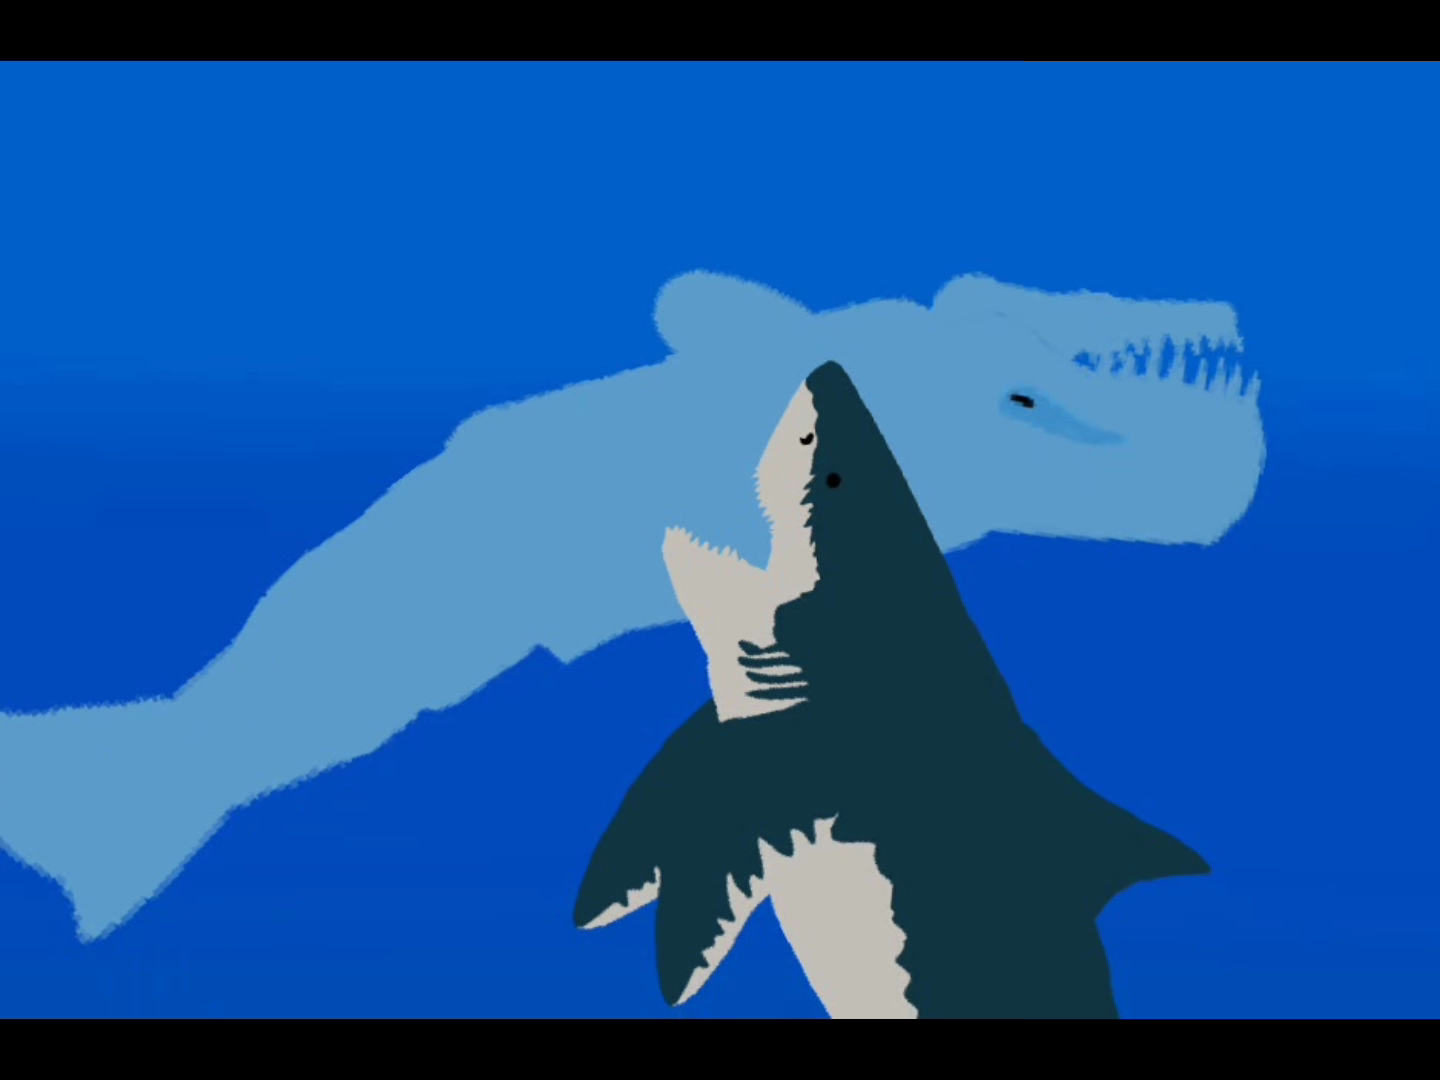 长野鲸vs梅尔维尔鲸图片